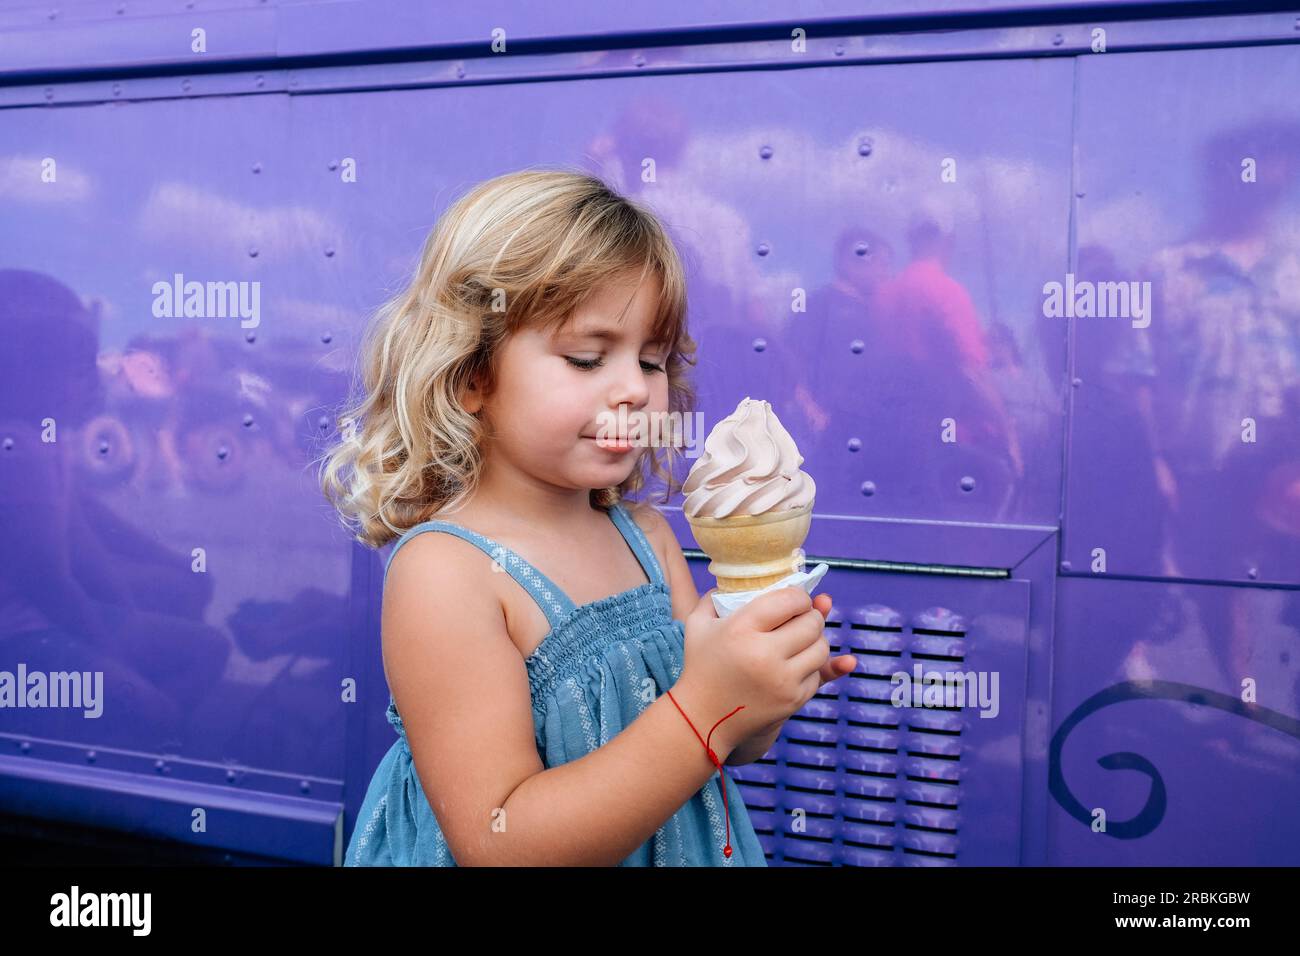 Ein kleines Mädchen, das sich darauf vorbereitet, Eis auf einer Zwiebel zu essen Stockfoto